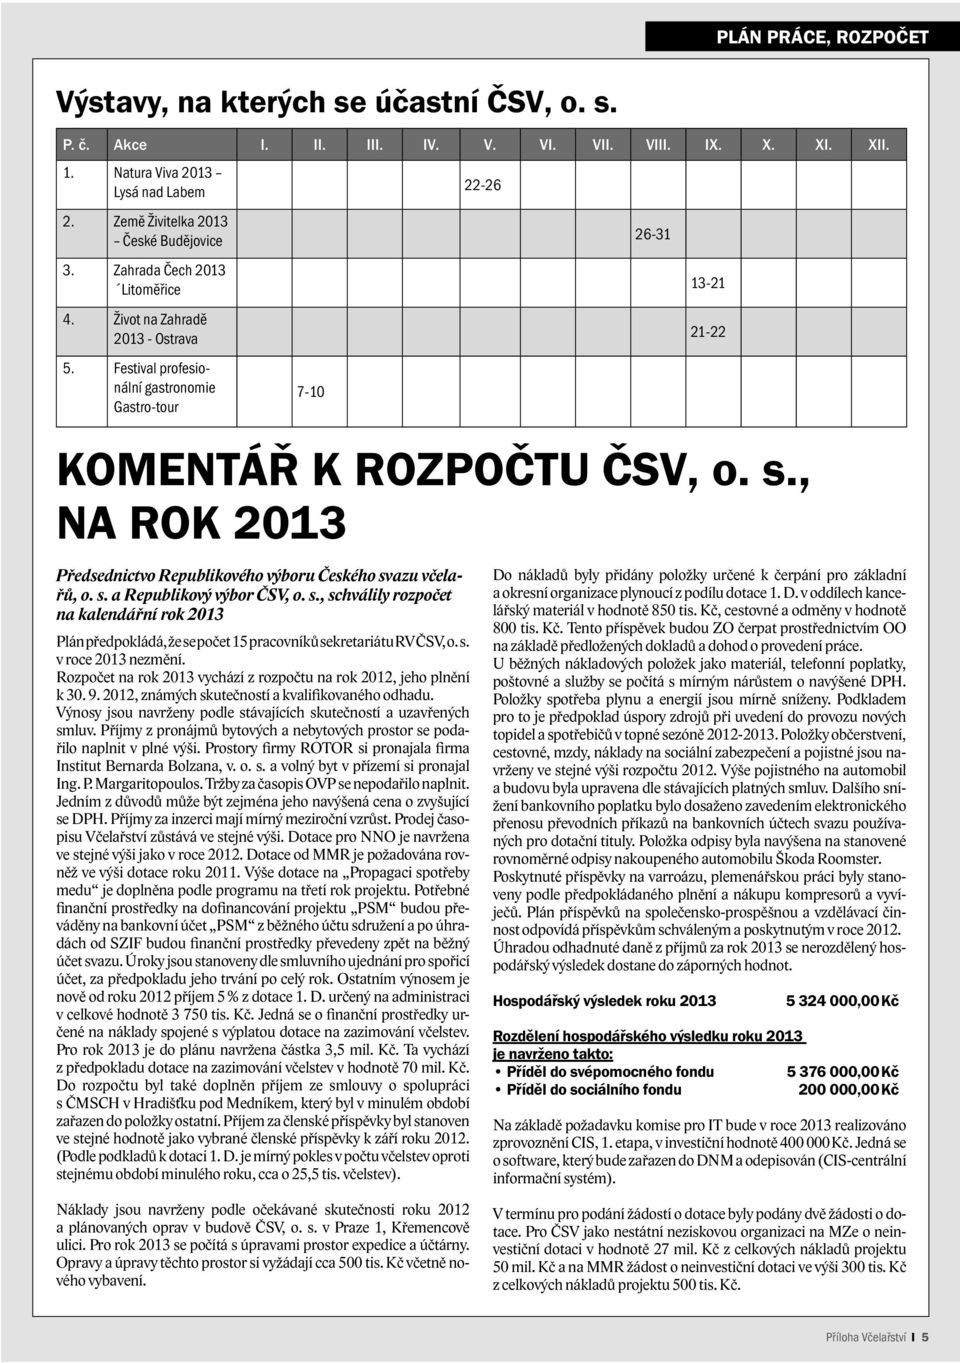 s., schválily rozpočet na kalendářní rok 2013 Plán předpokládá, že se počet 15 pracovníků sekretariátu RV ČSV, o. s. v roce 2013 nezmění.